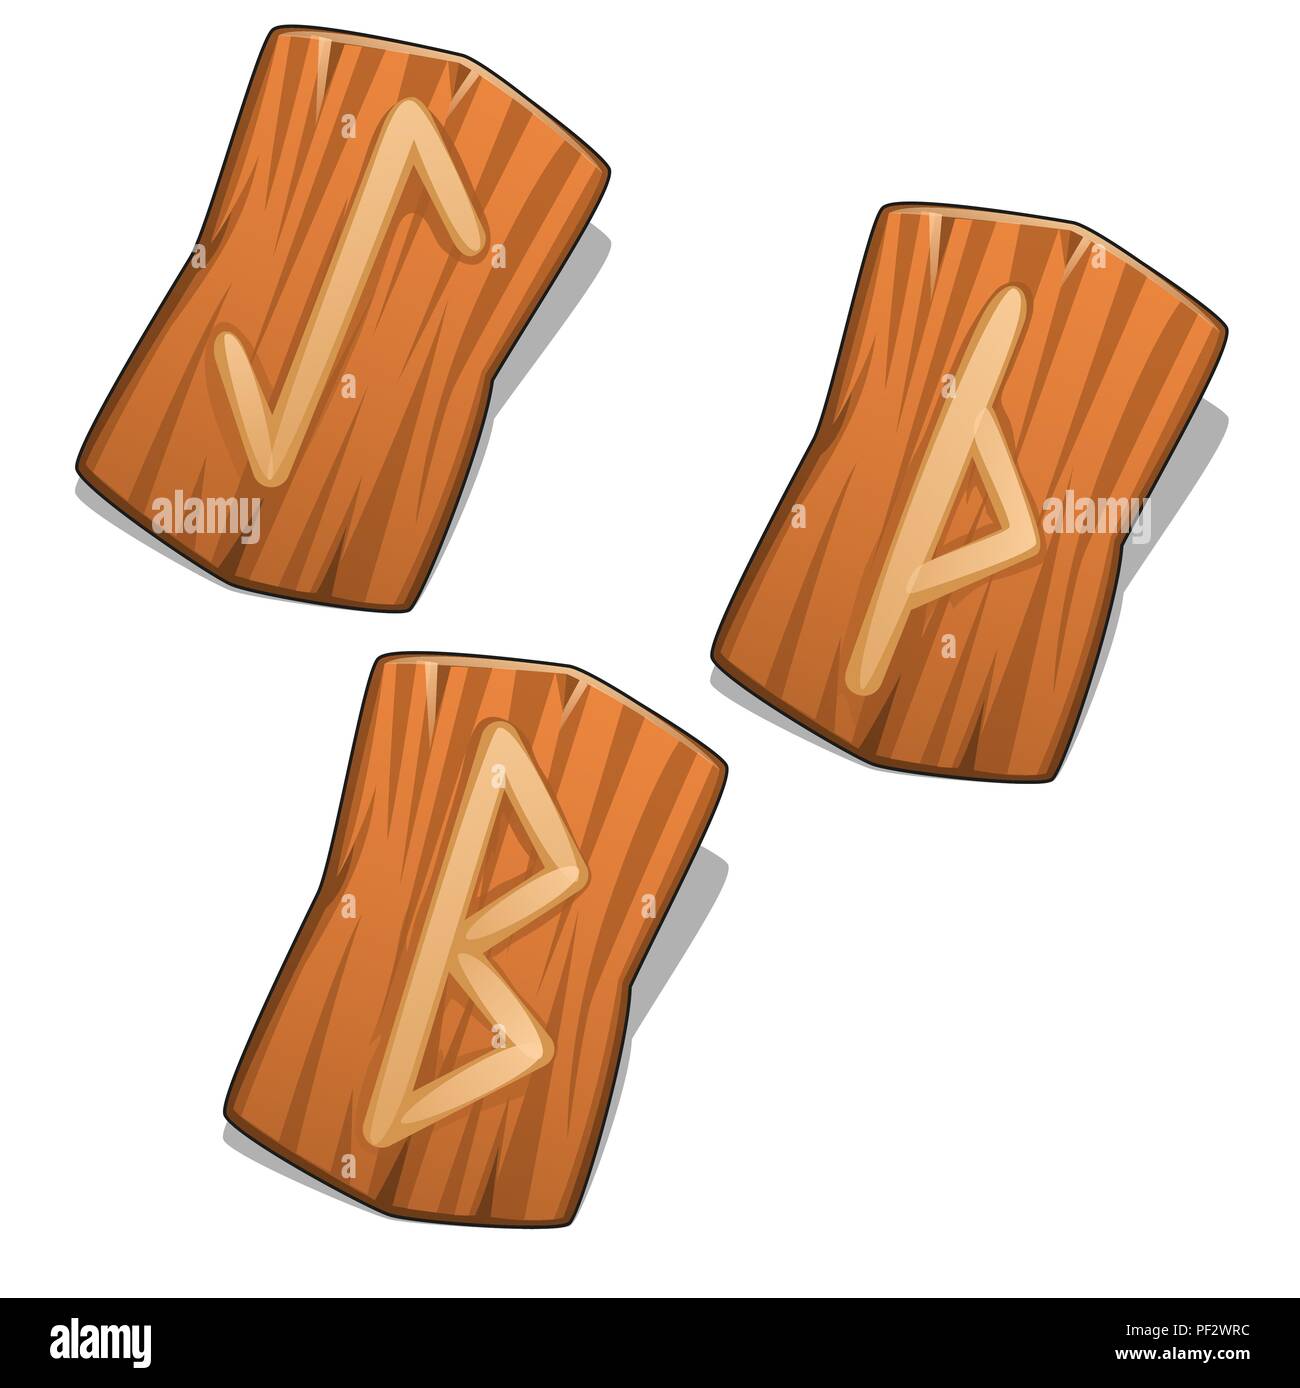 Bei den Symbolen der Germanischen und nordischen Runen Alphabete auf weißem Hintergrund. Vektor cartoon Close-up Abbildung. Stock Vektor